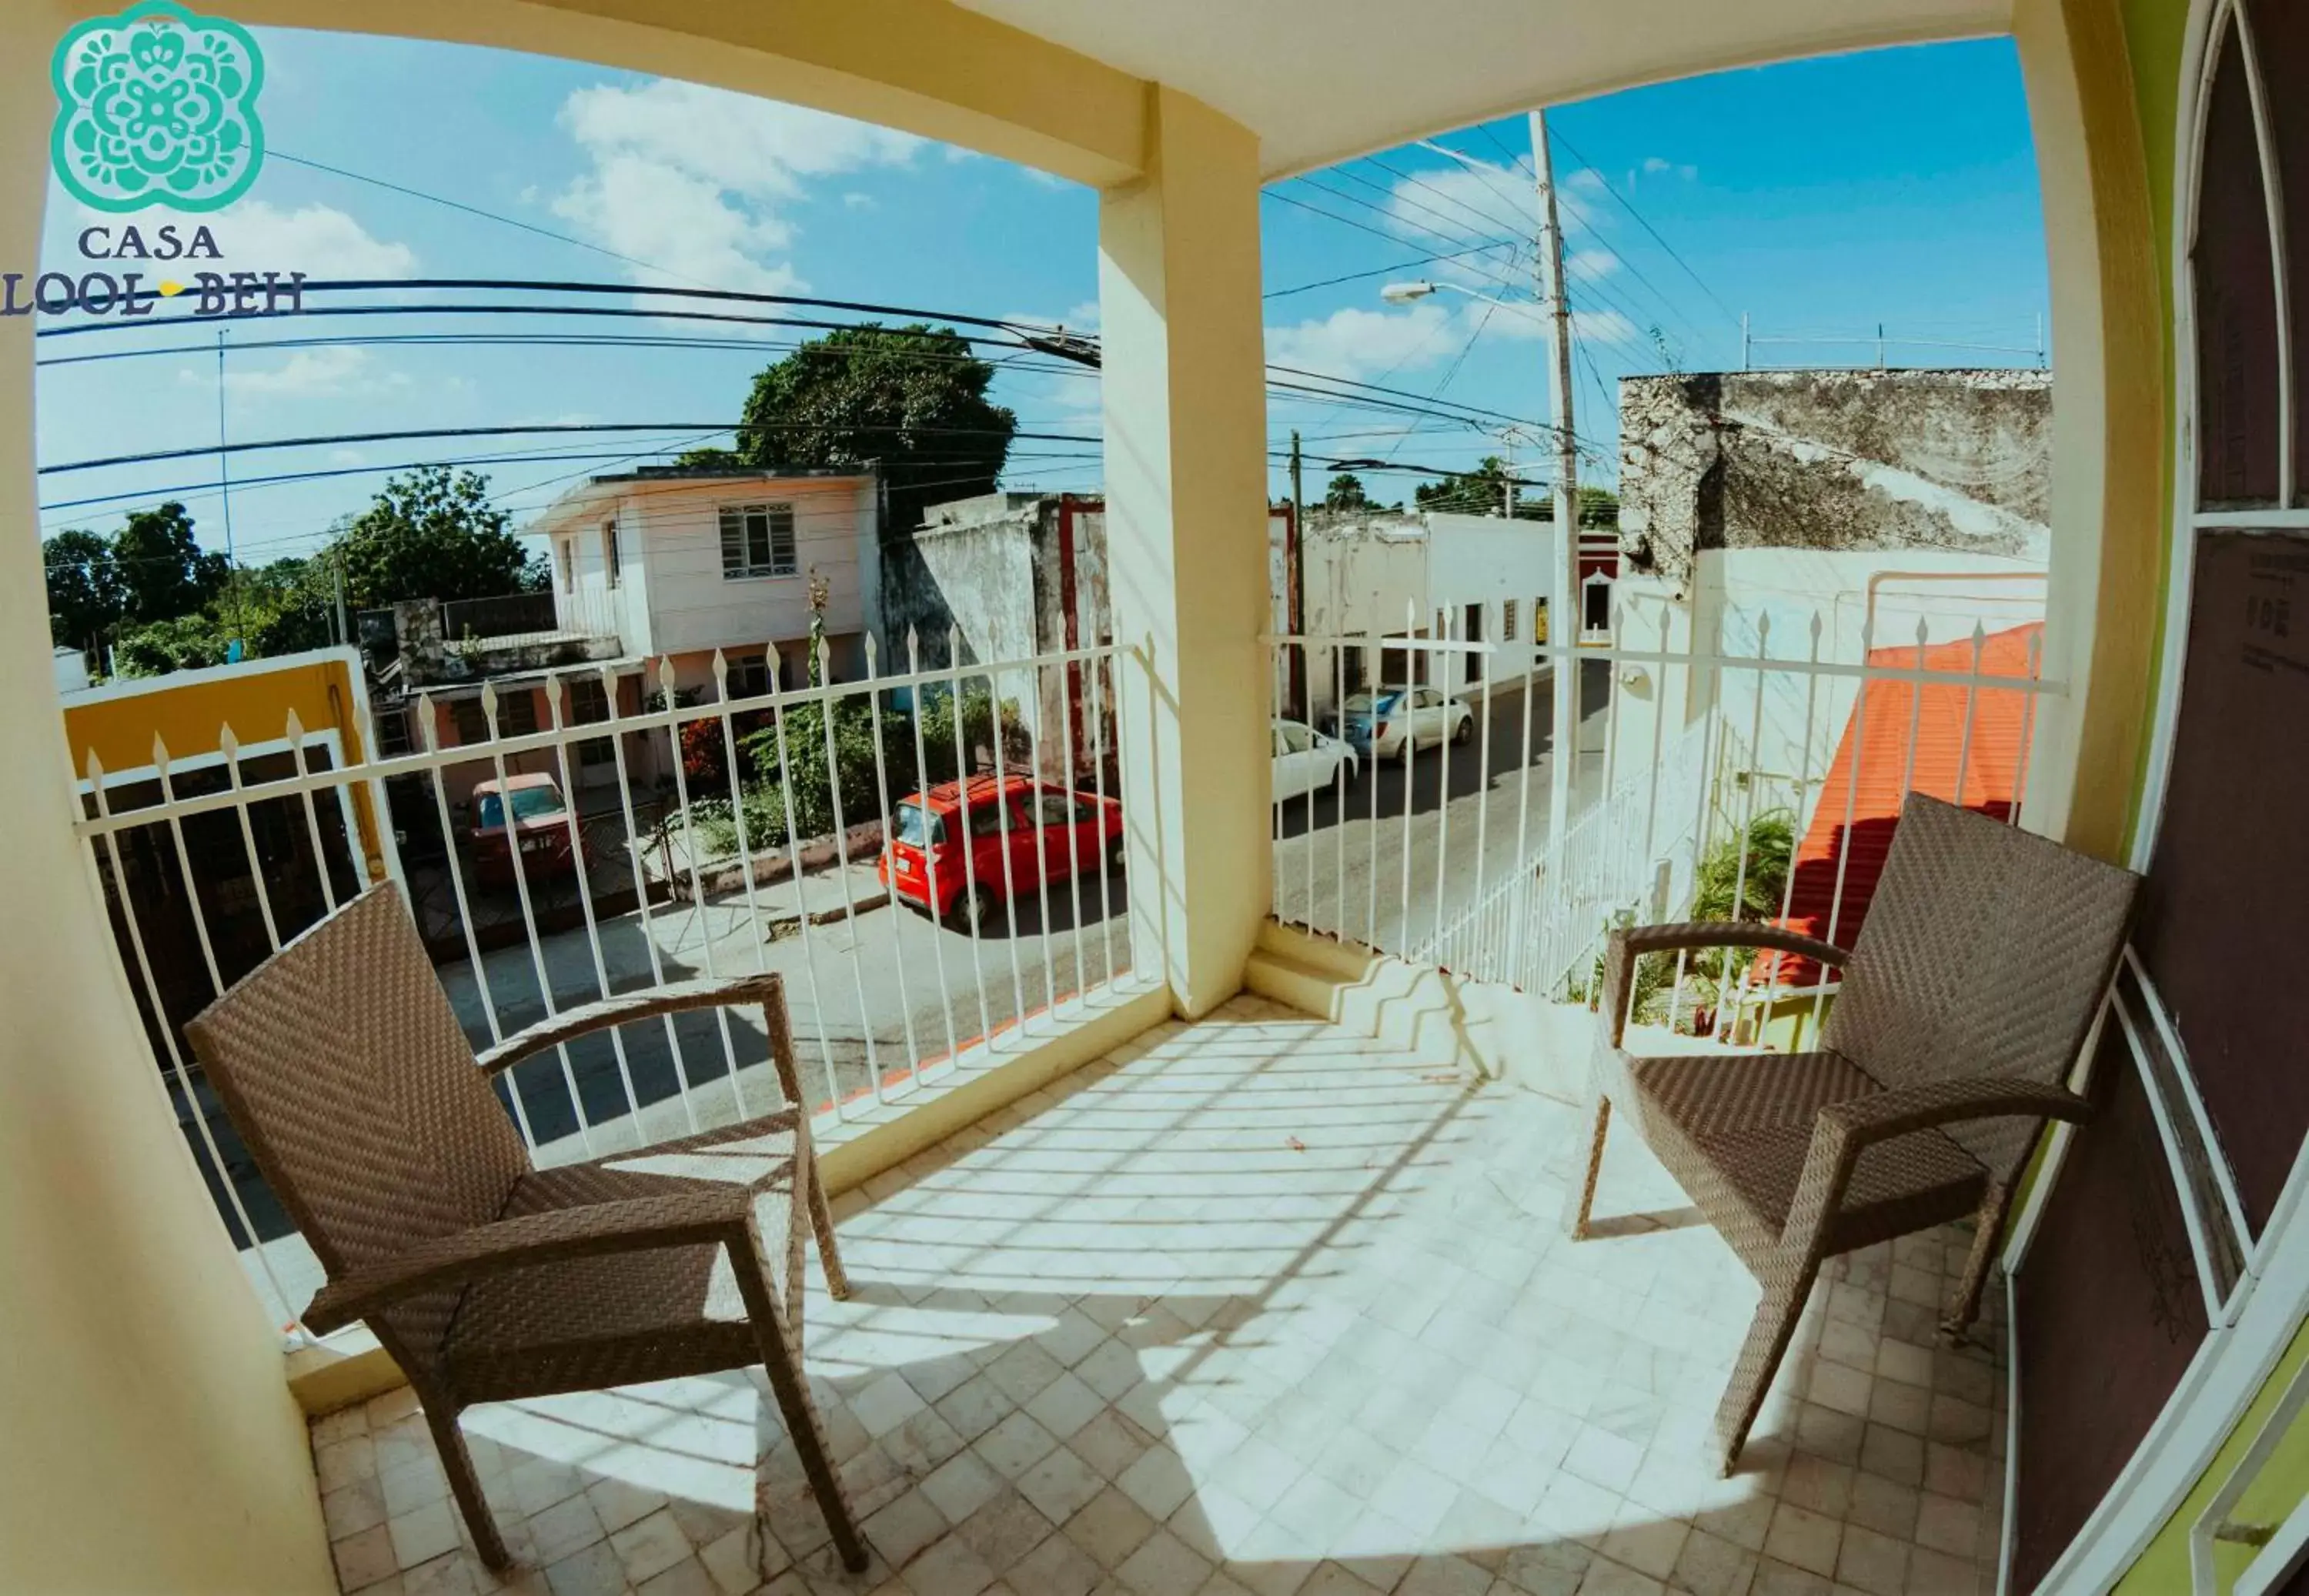 Balcony/Terrace in Casa Lool Beh